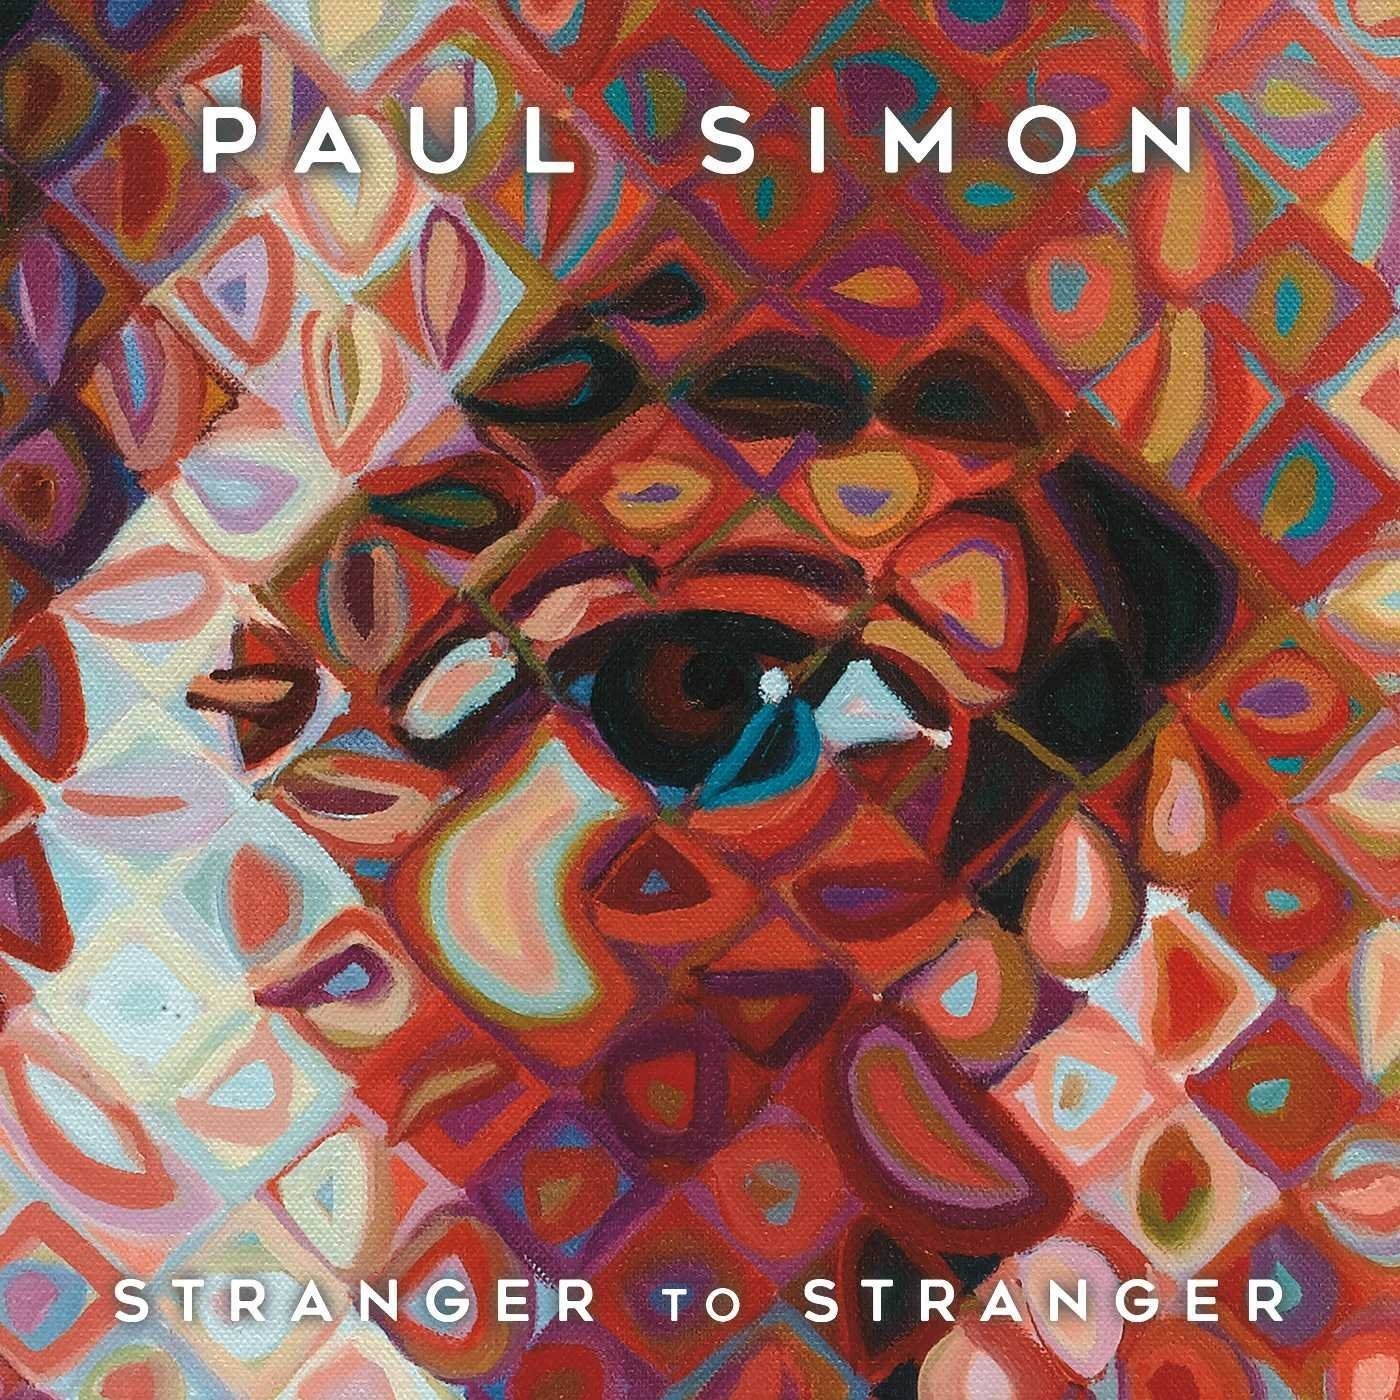 Paul Simon - Stranger To Stranger {Deluxe Edition} (2016) [HDTracks FLAC 24bit/96kHz]